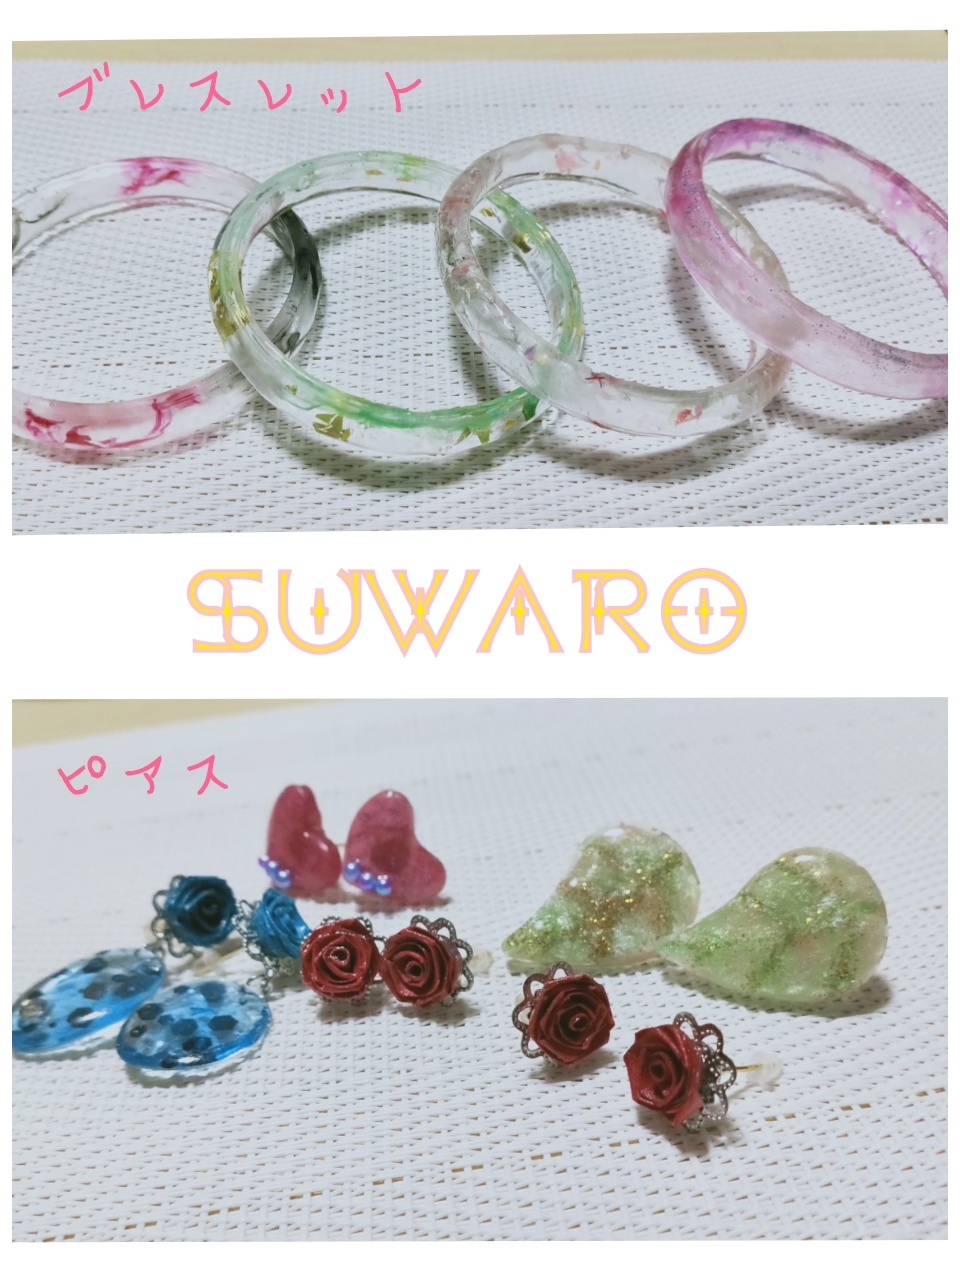 小物shop Suwaro開設しました。